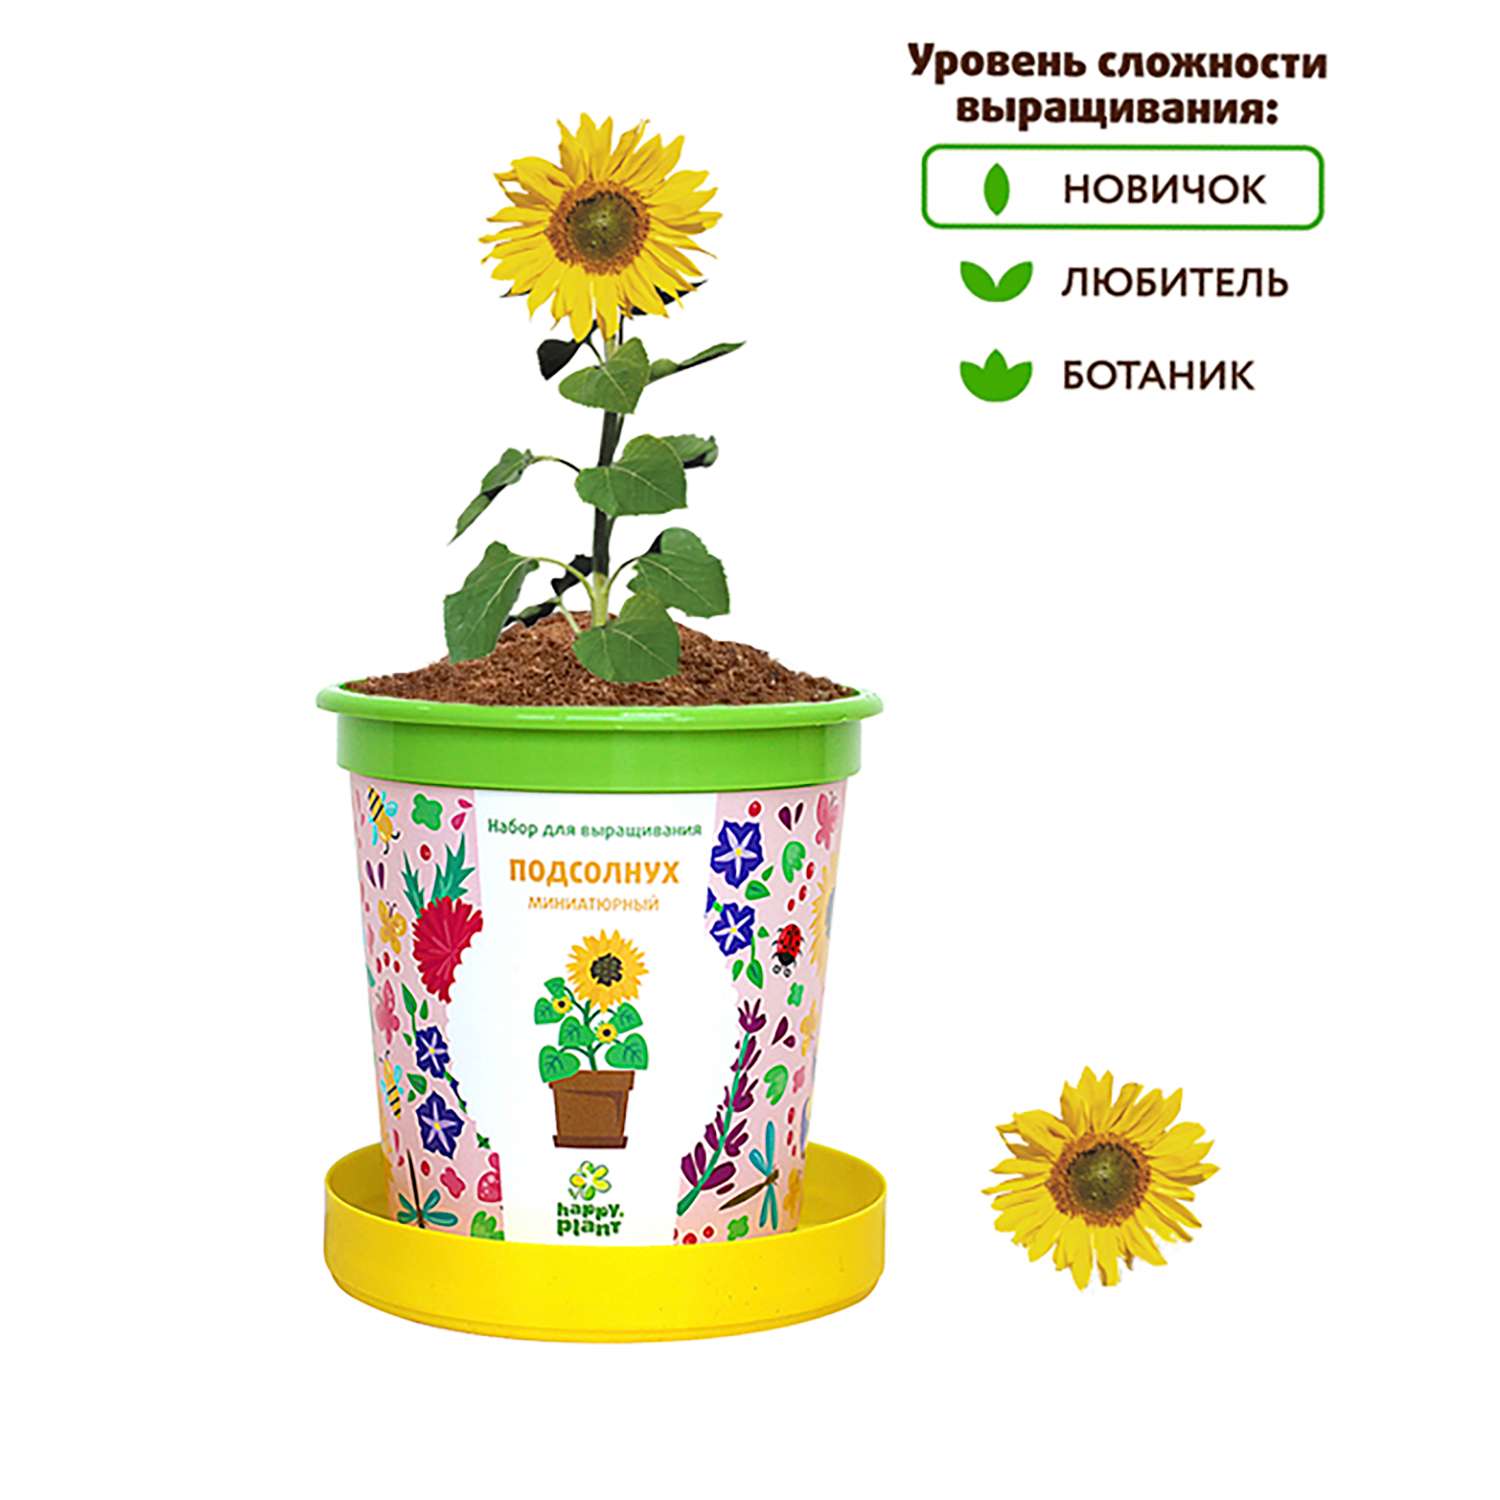 Набор для выращивания Happy Plant Вырасти сам растение в горшочке Подсолнух миниатюрный - фото 6